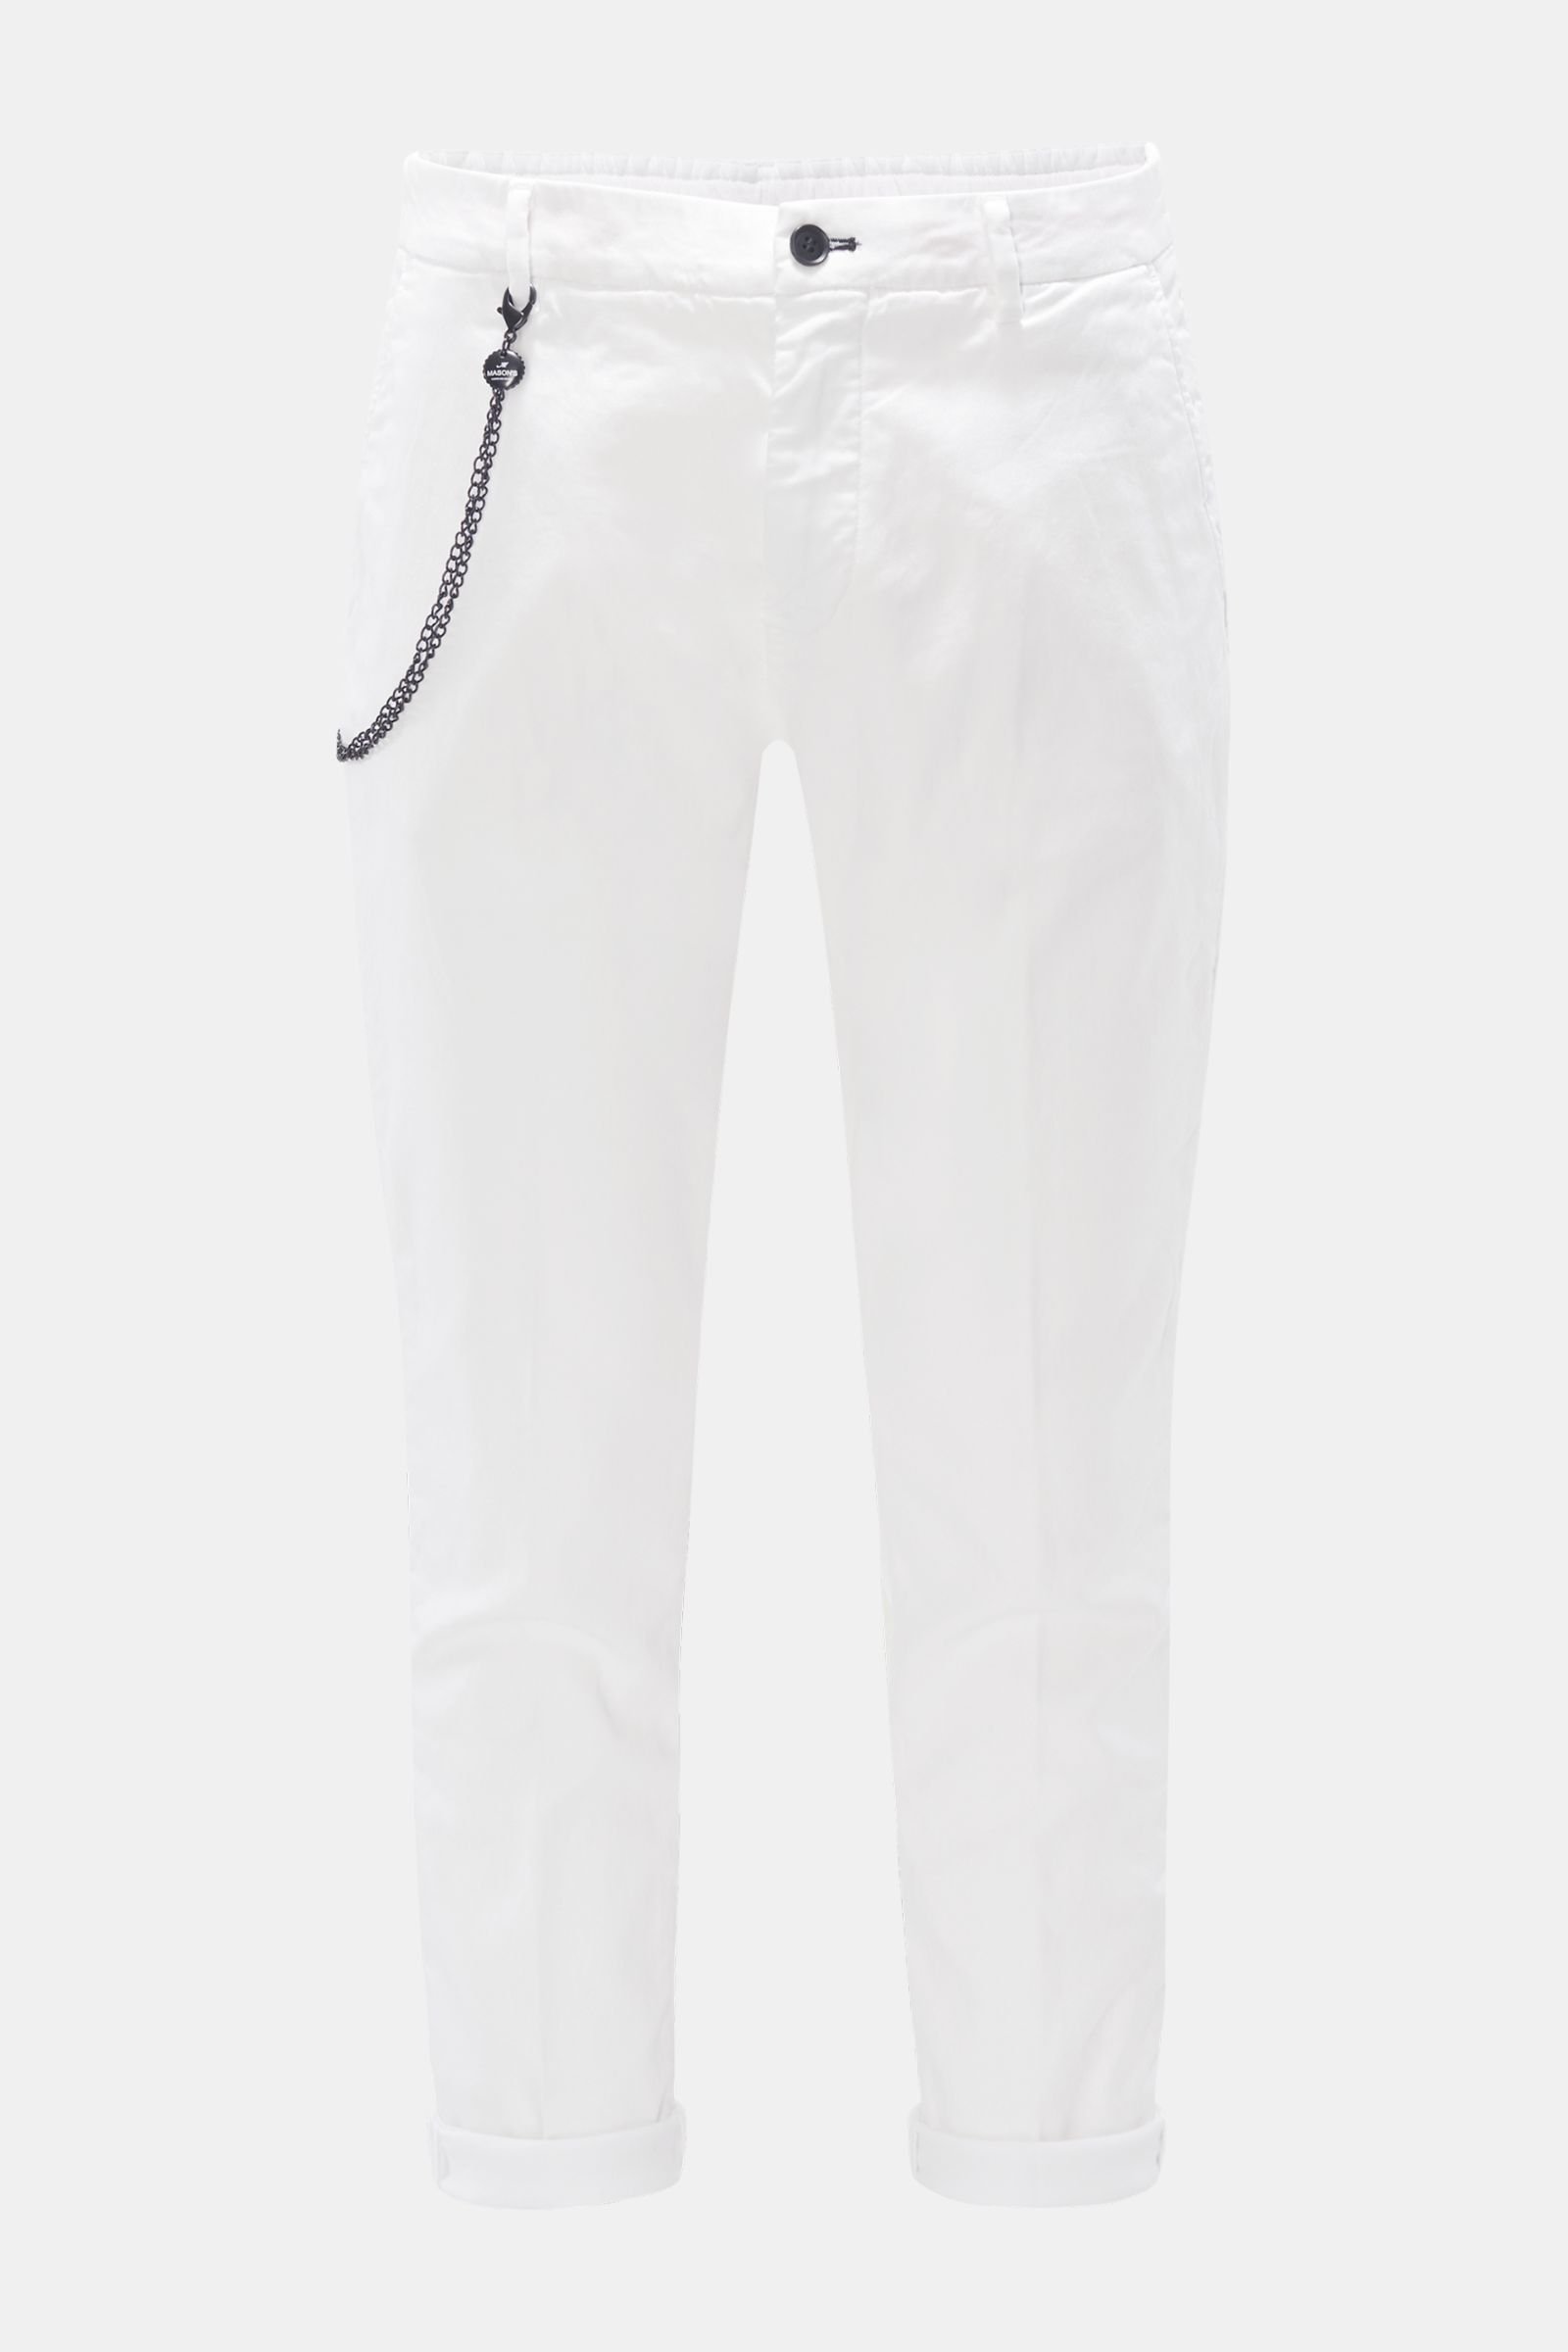 Jogger pants 'Osaka Athleisure' white 